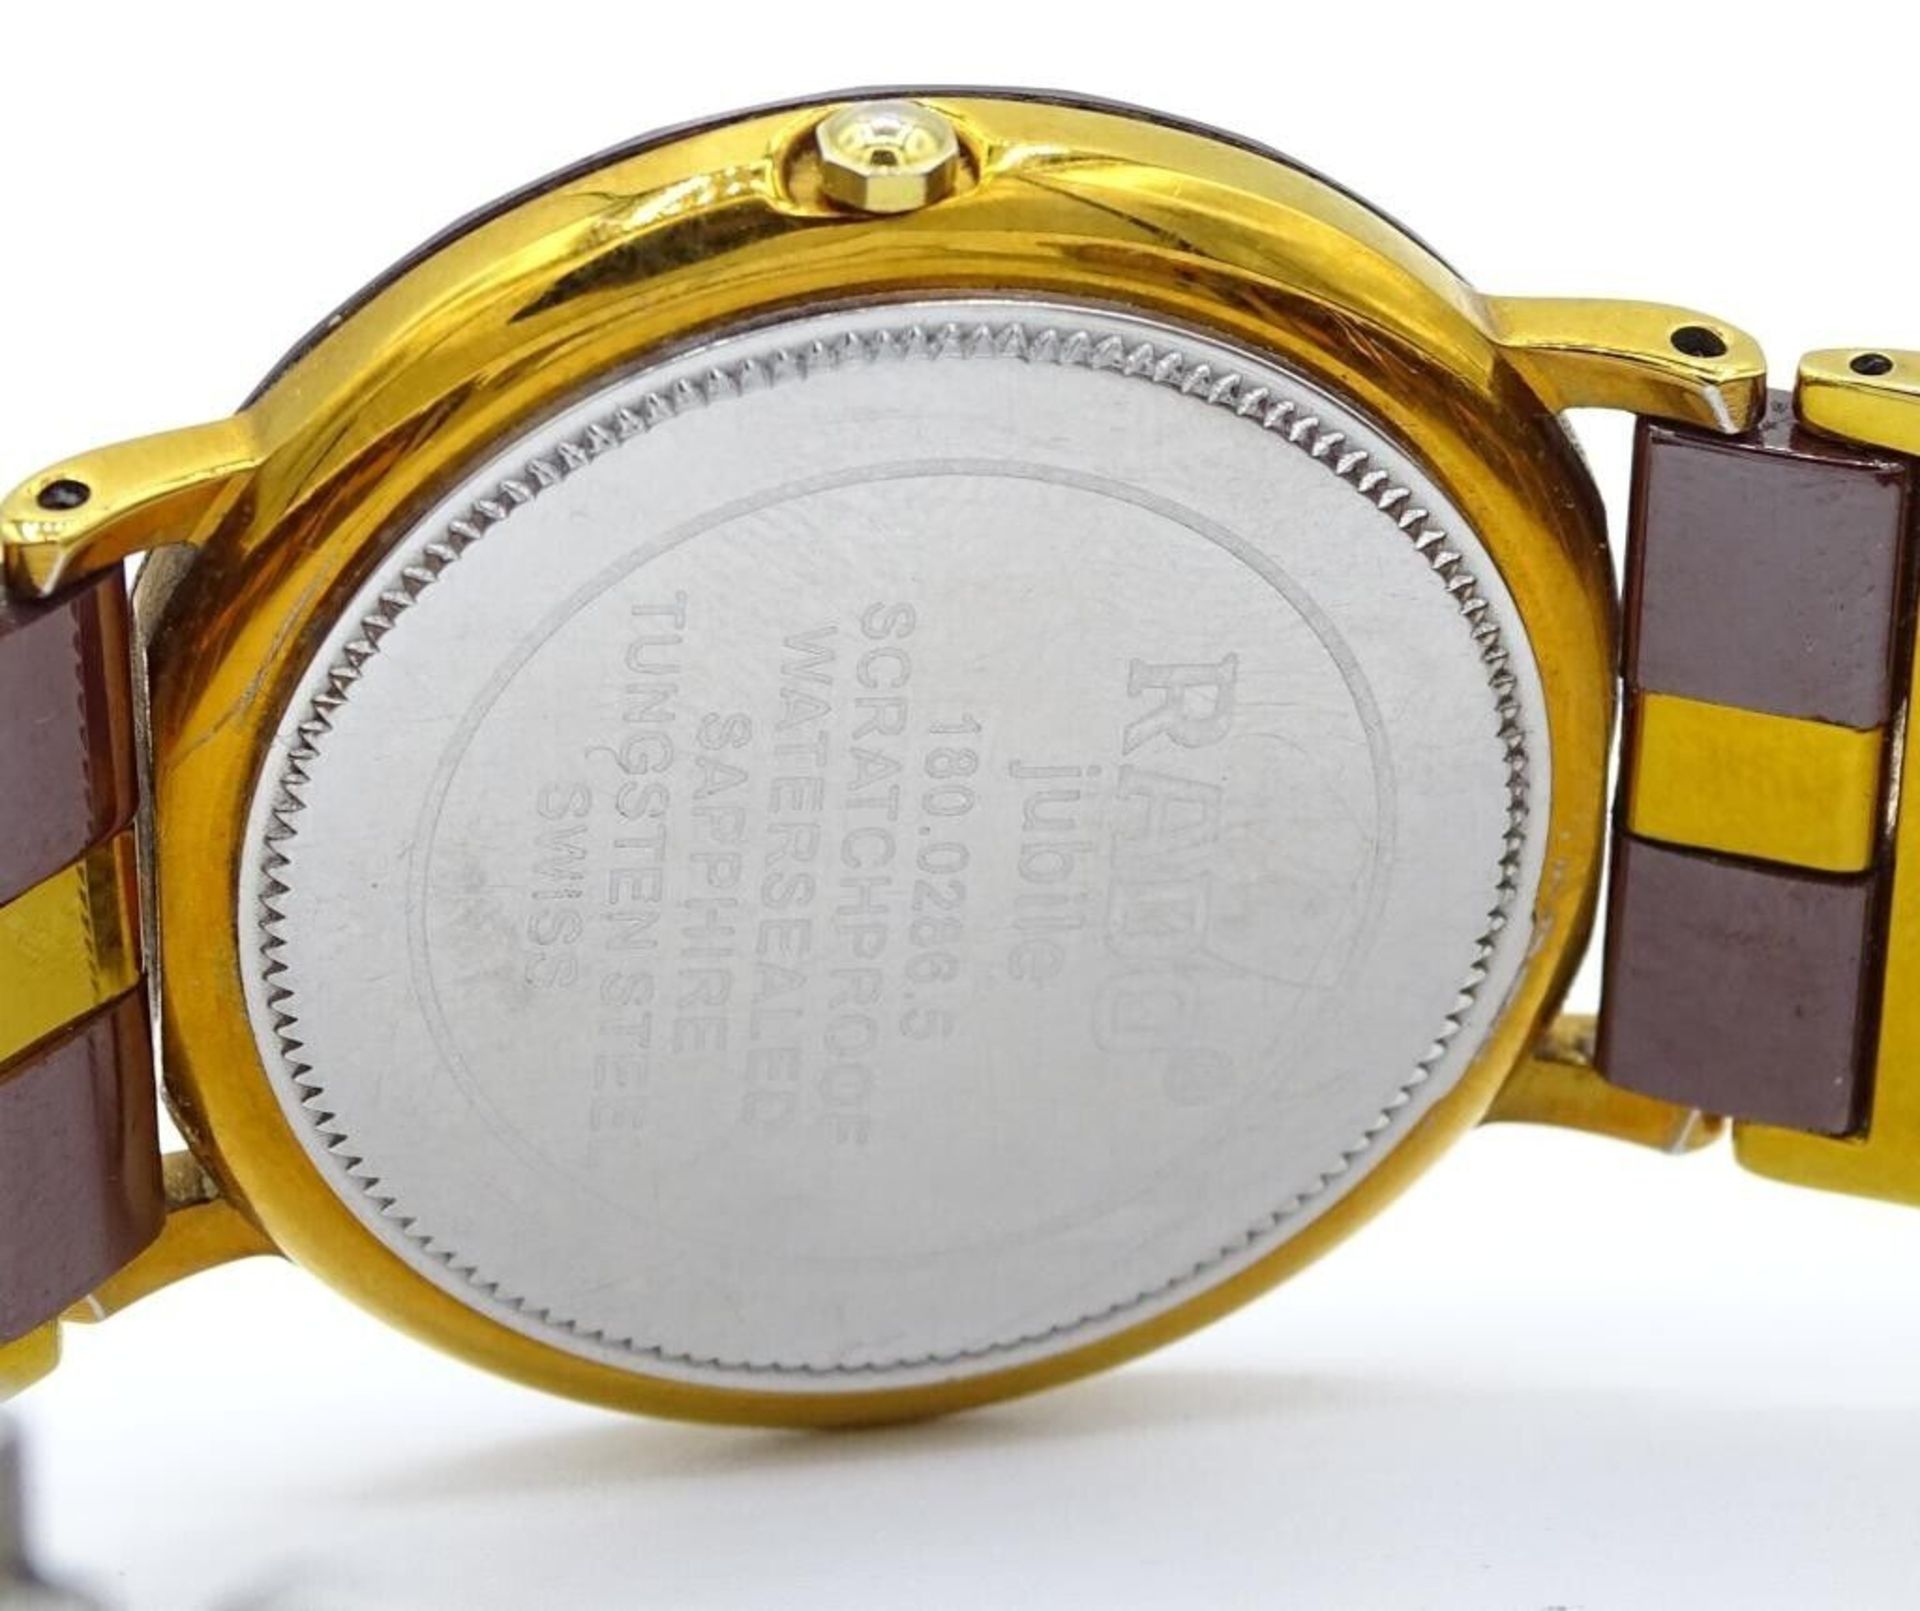 Armbanduhr "Rado-Jubilé" Quarz, Saphirglas, Unisex, auf Deckel: 180.0286.5, facettiertes Gehäuse, - Image 4 of 6